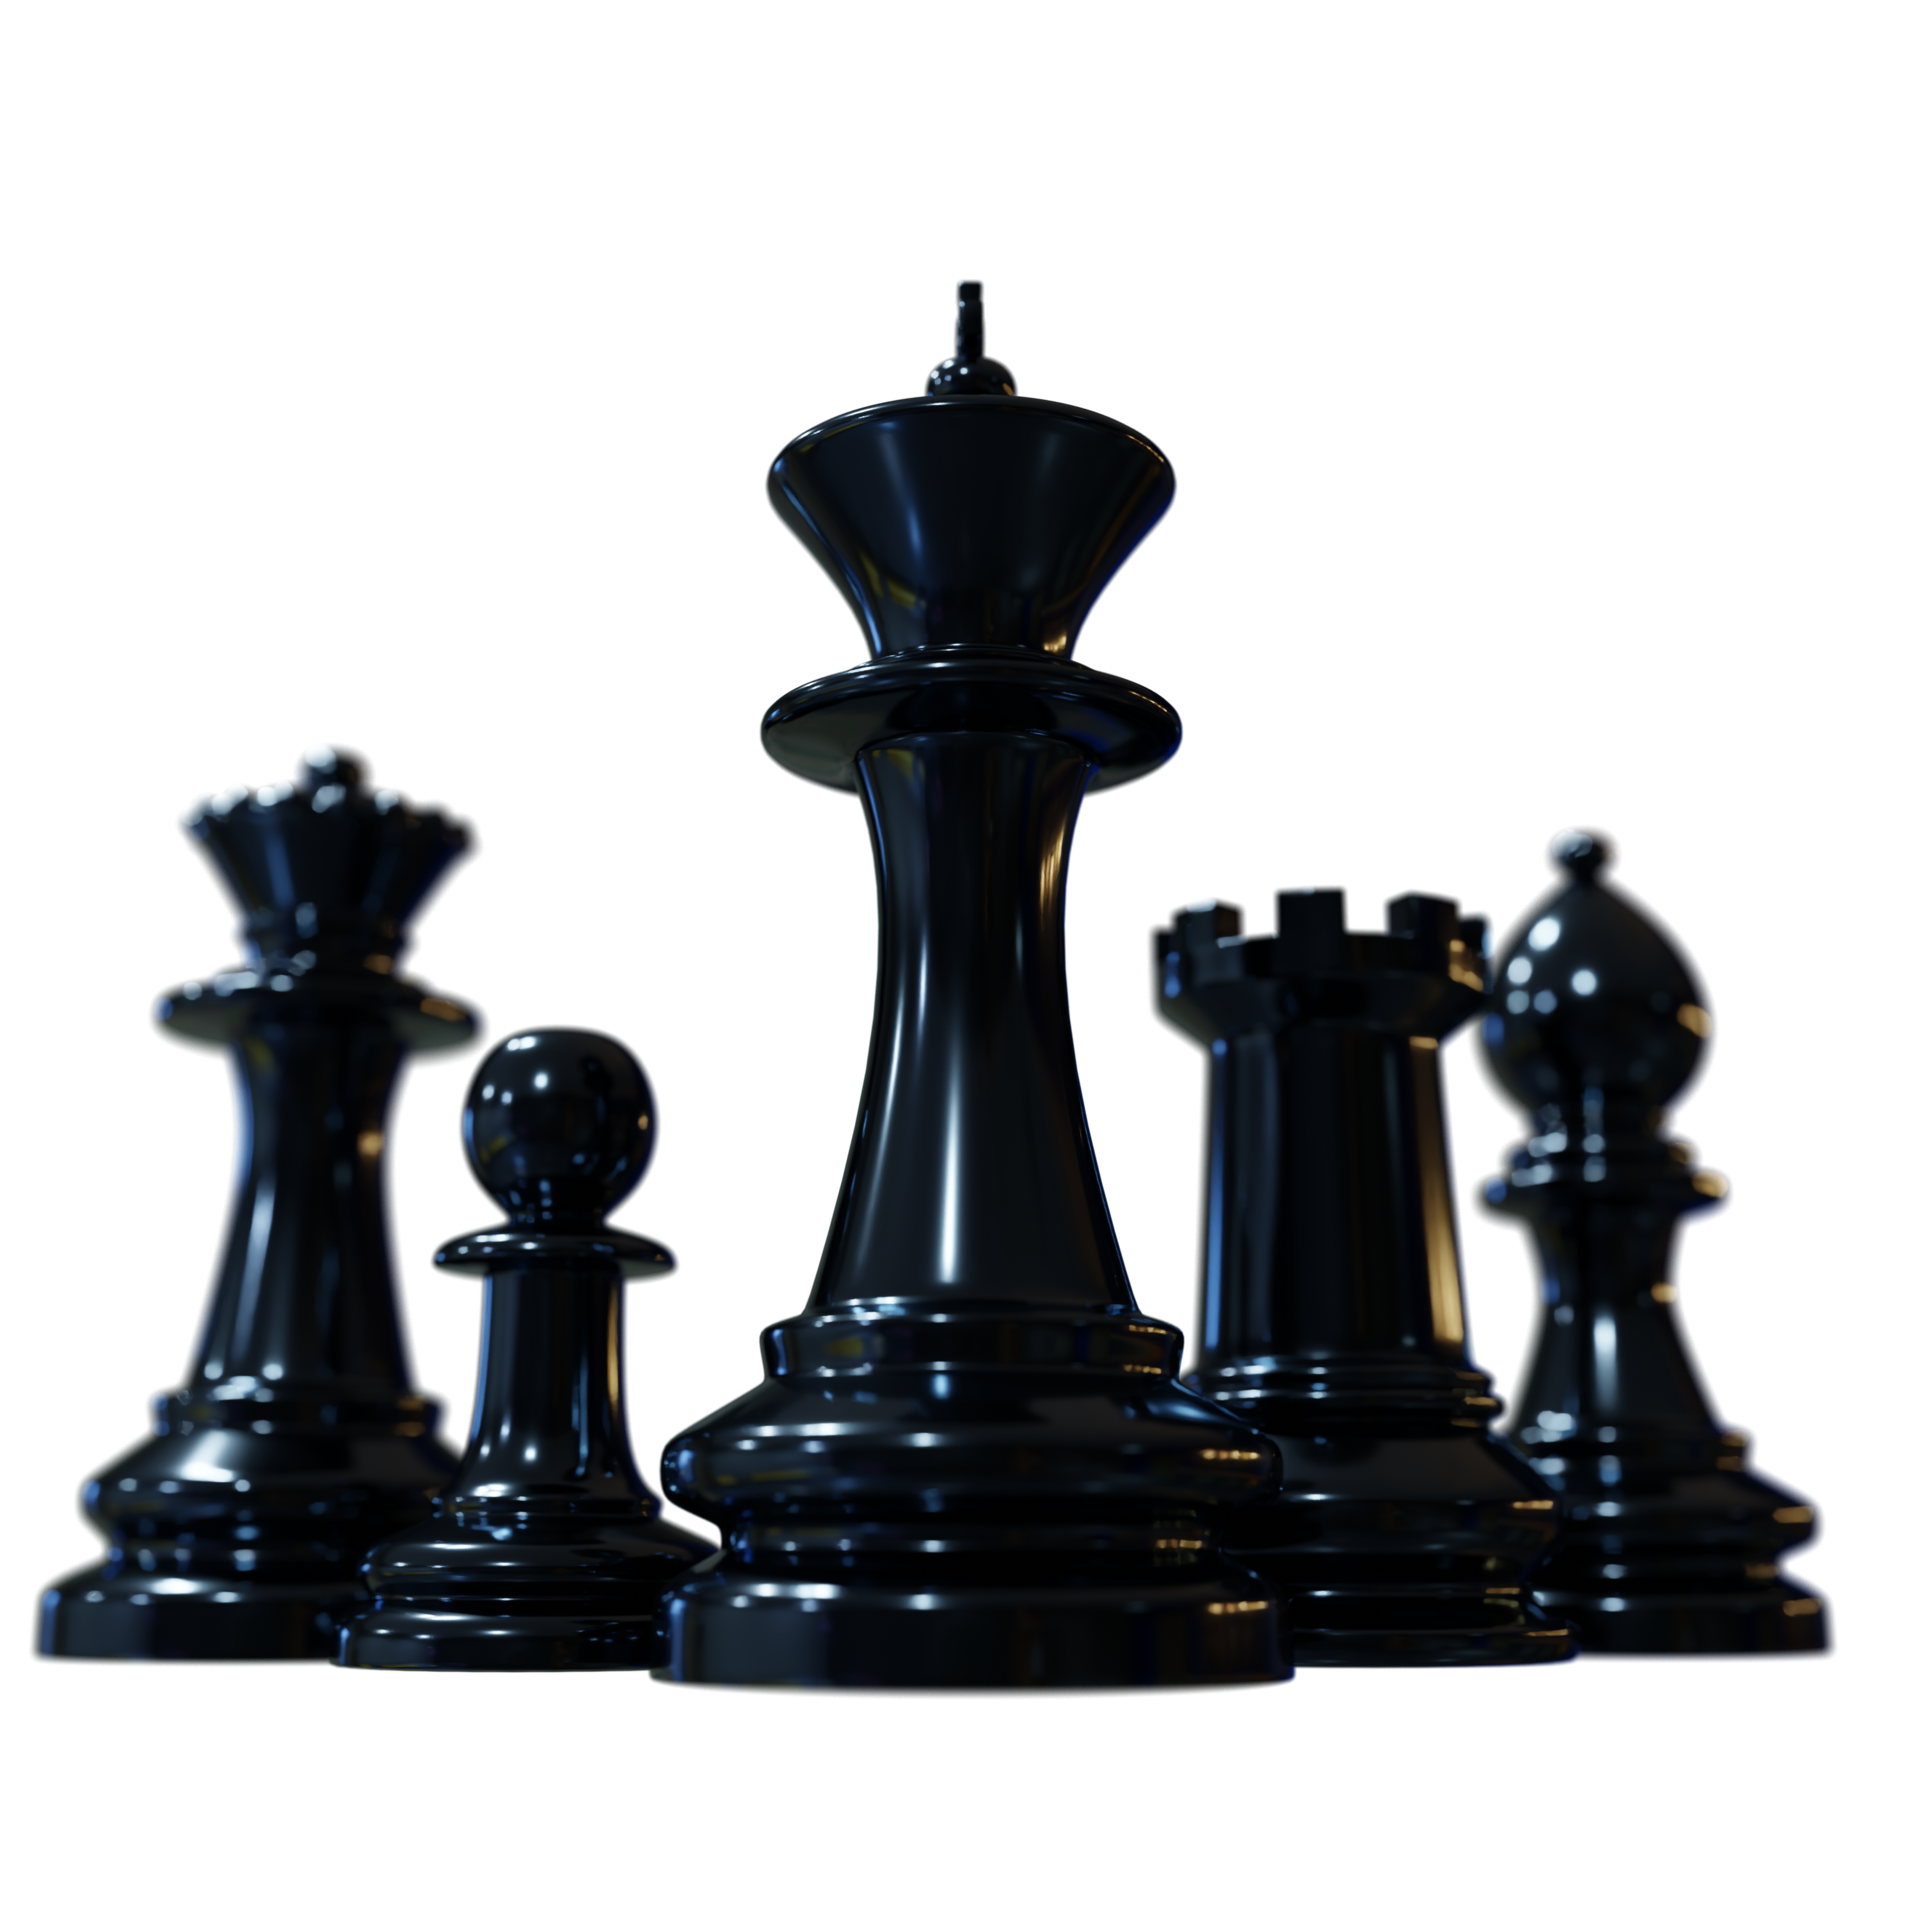 Um jogo de xadrez chega ao fim. o rei está em xeque-mate. renderização  tridimensional